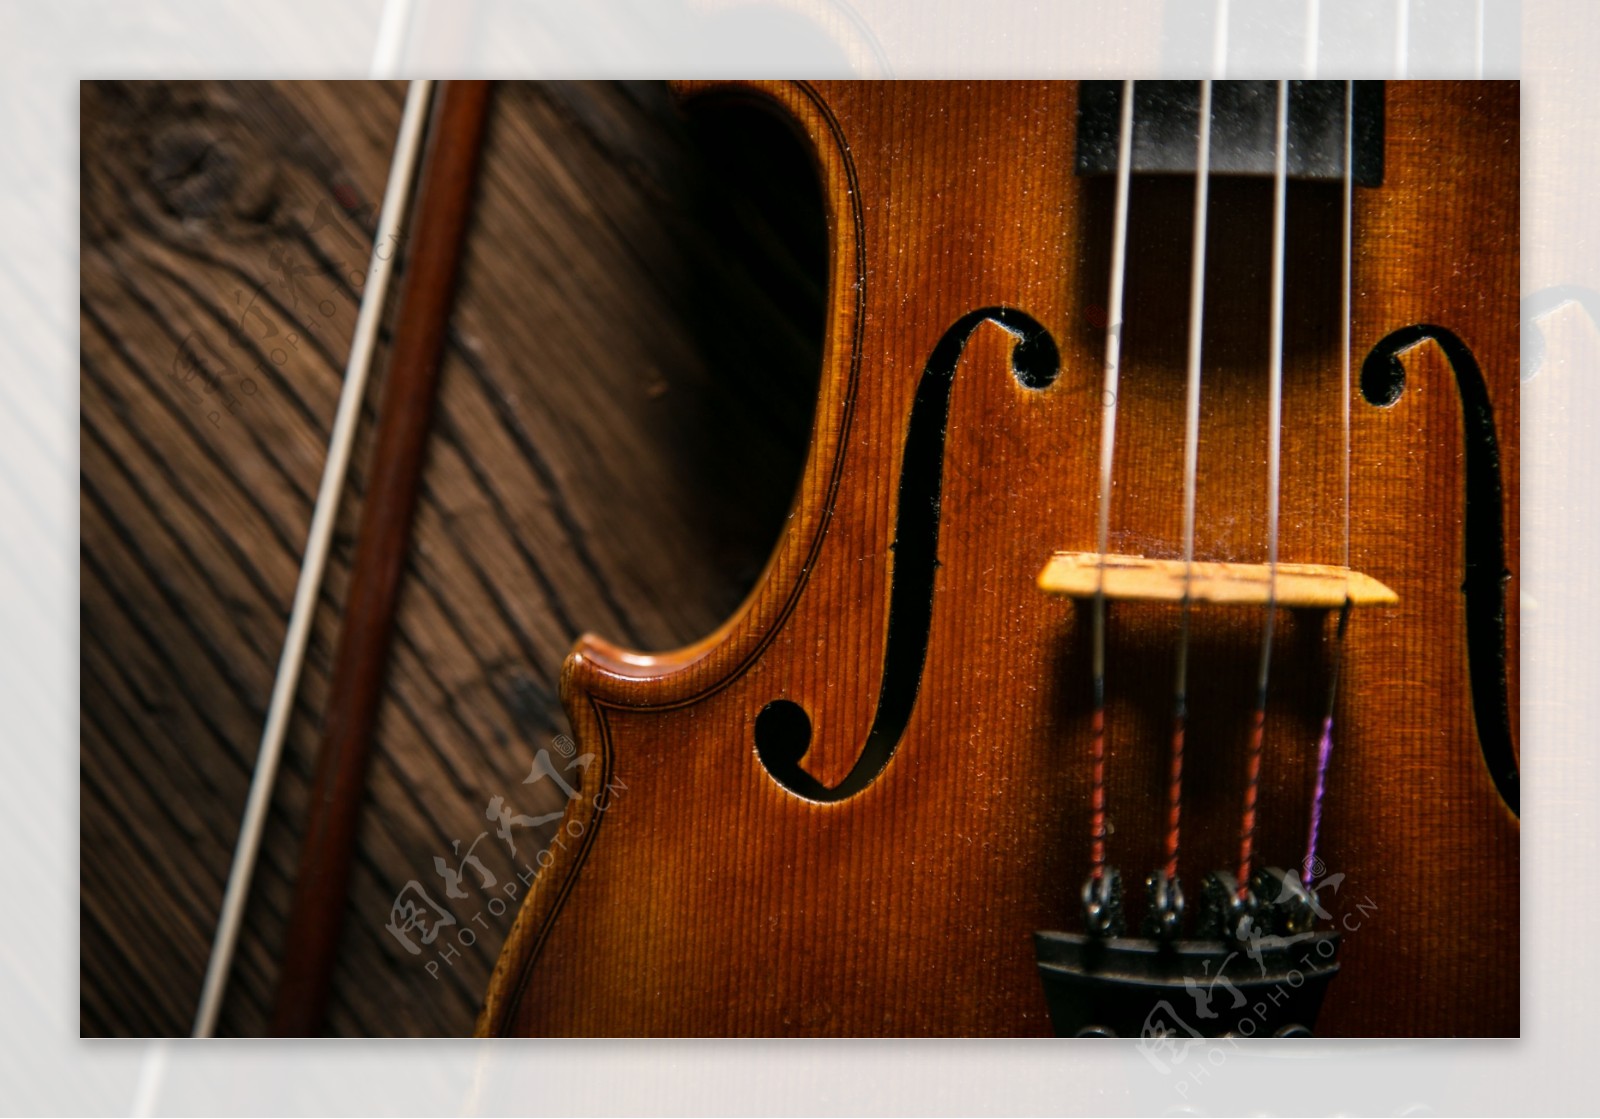 乐器大提琴局部图片